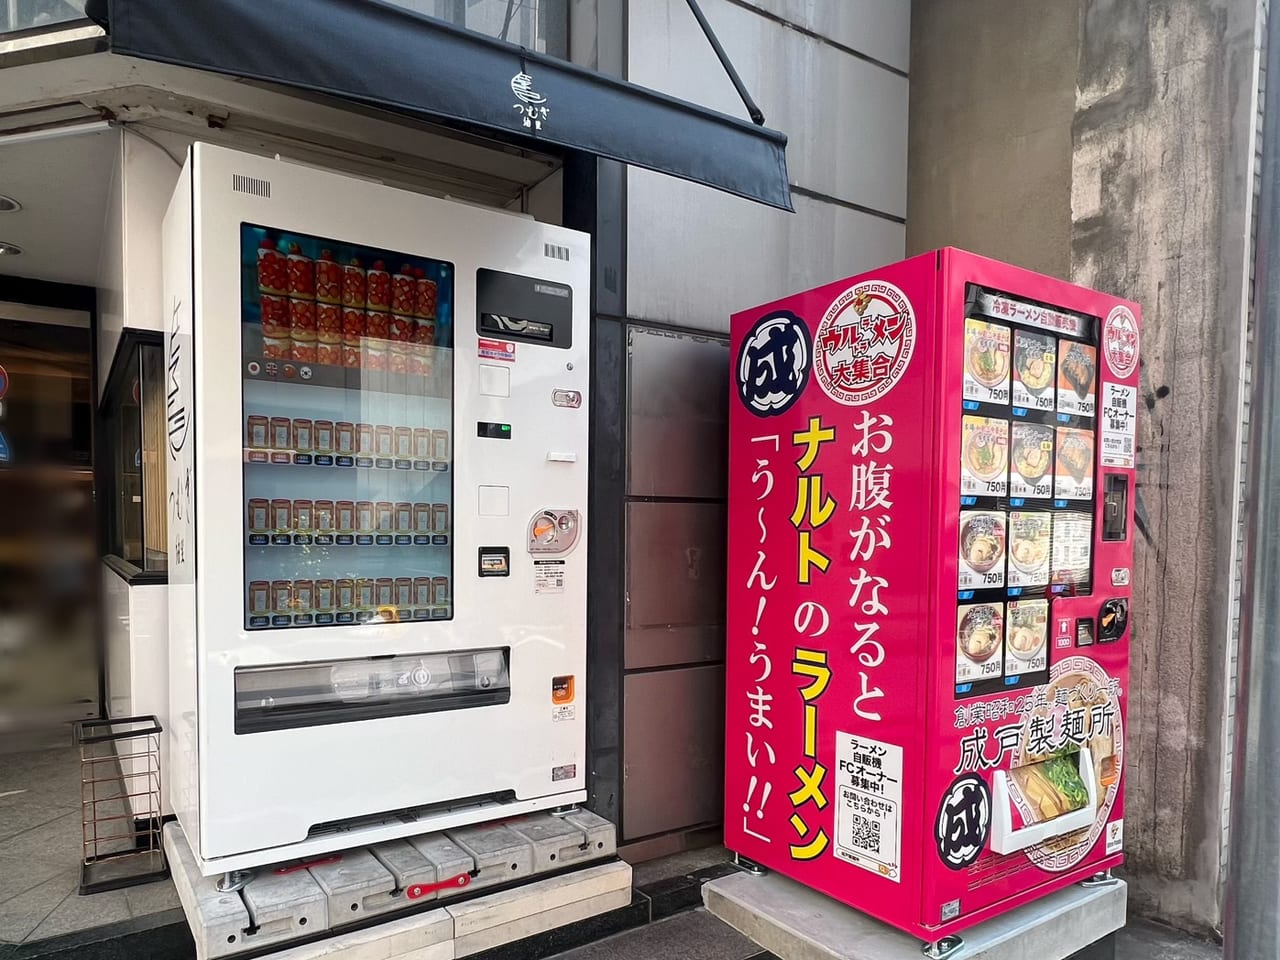 冷凍ラーメンの自販機